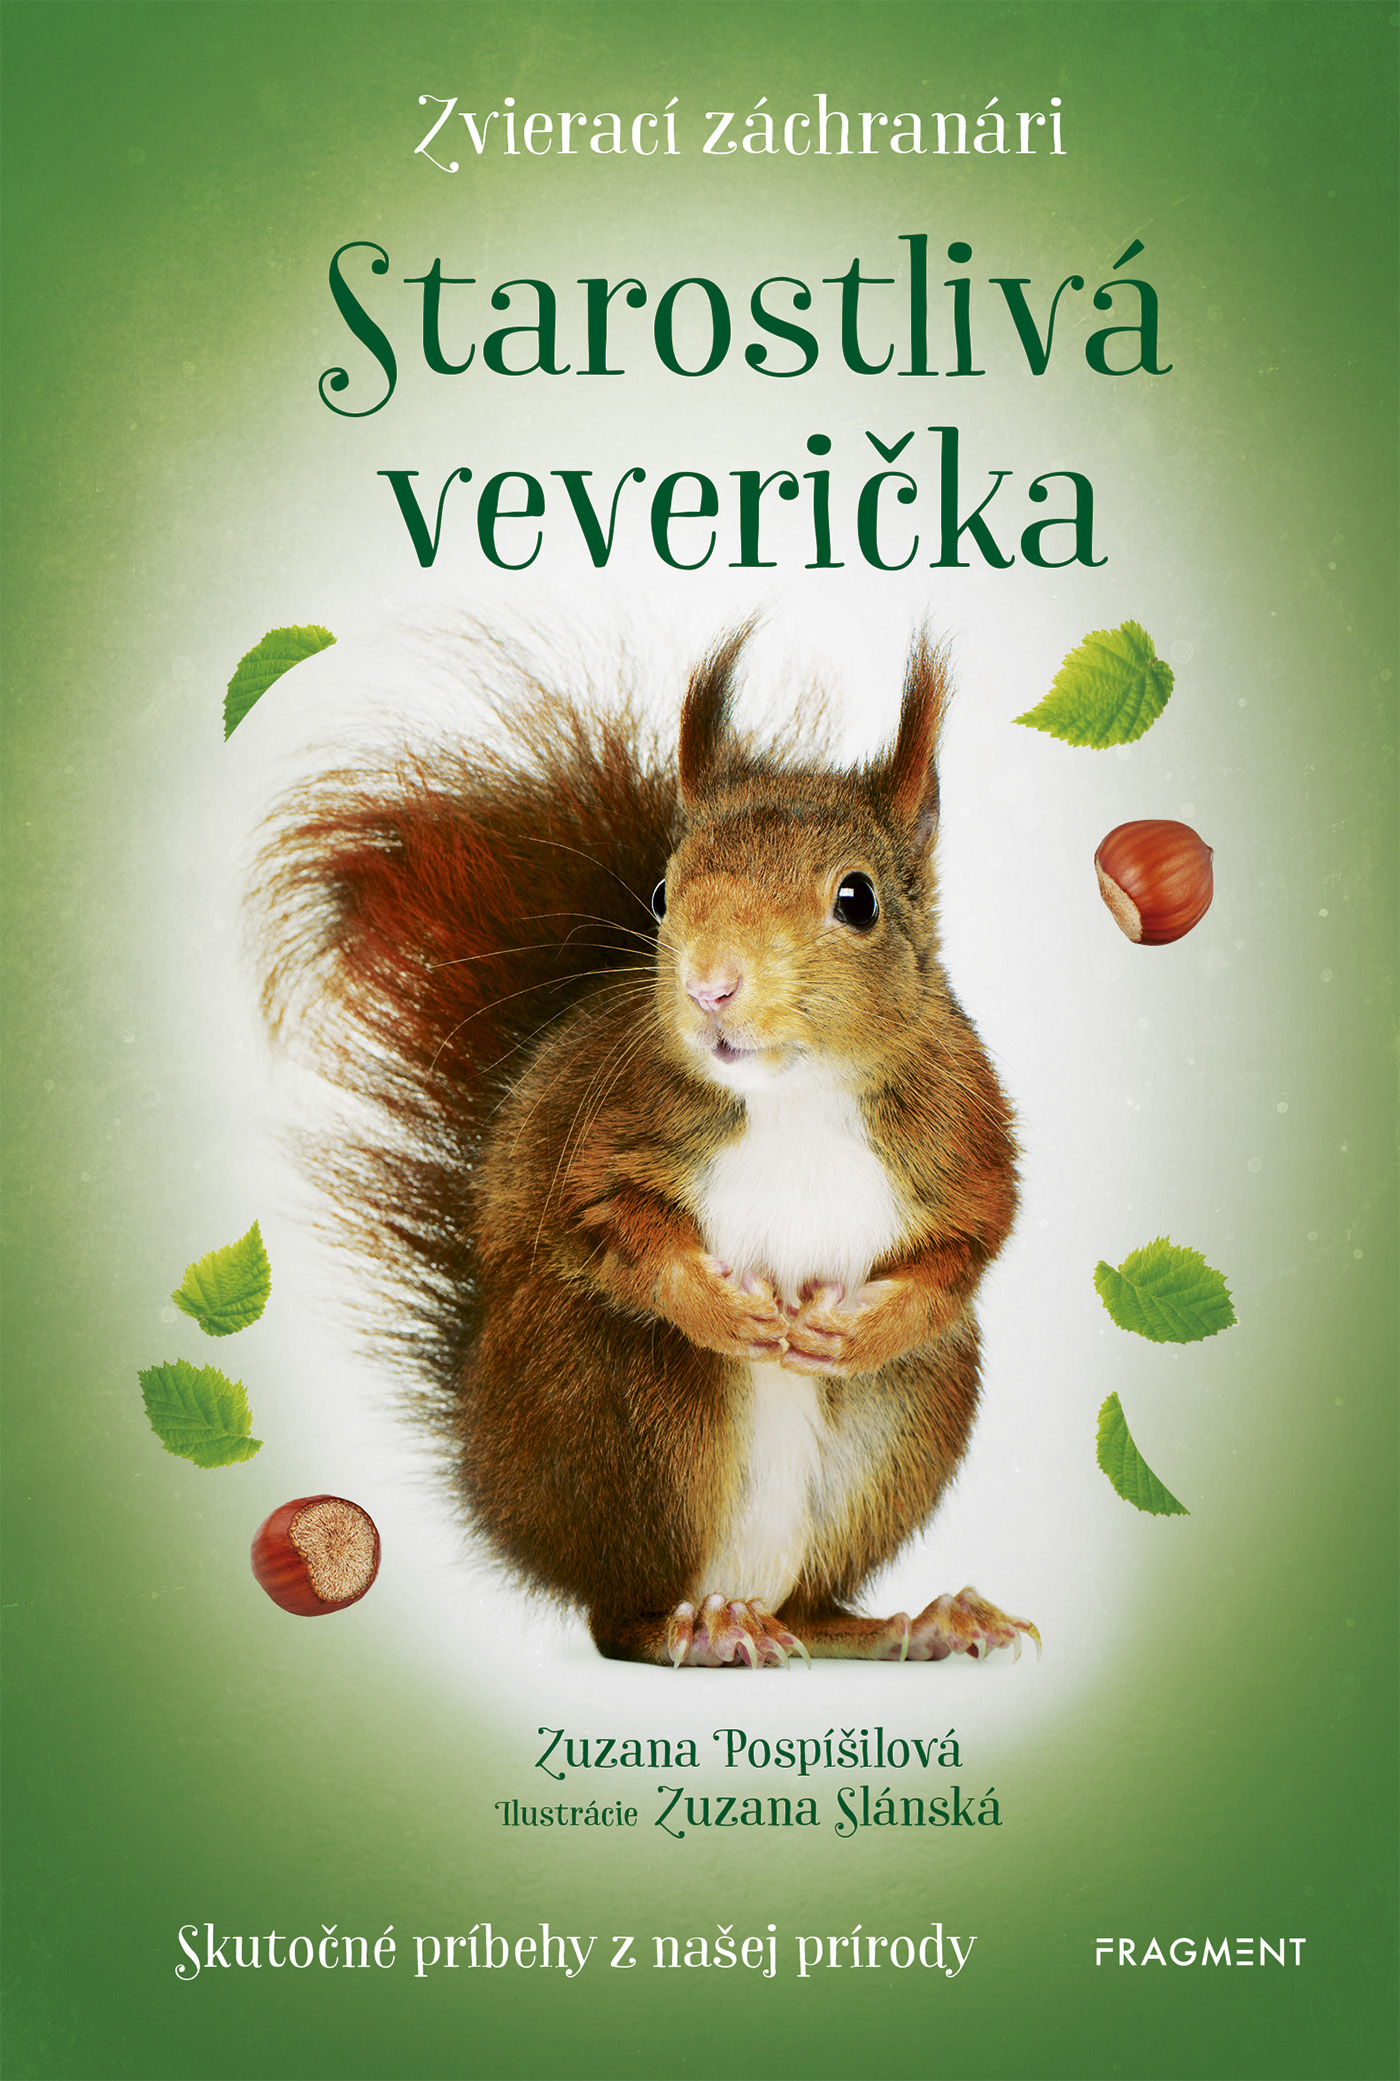 E-kniha Zvierací záchranári - Starostlivá veverička - Zuzana Pospíšilová